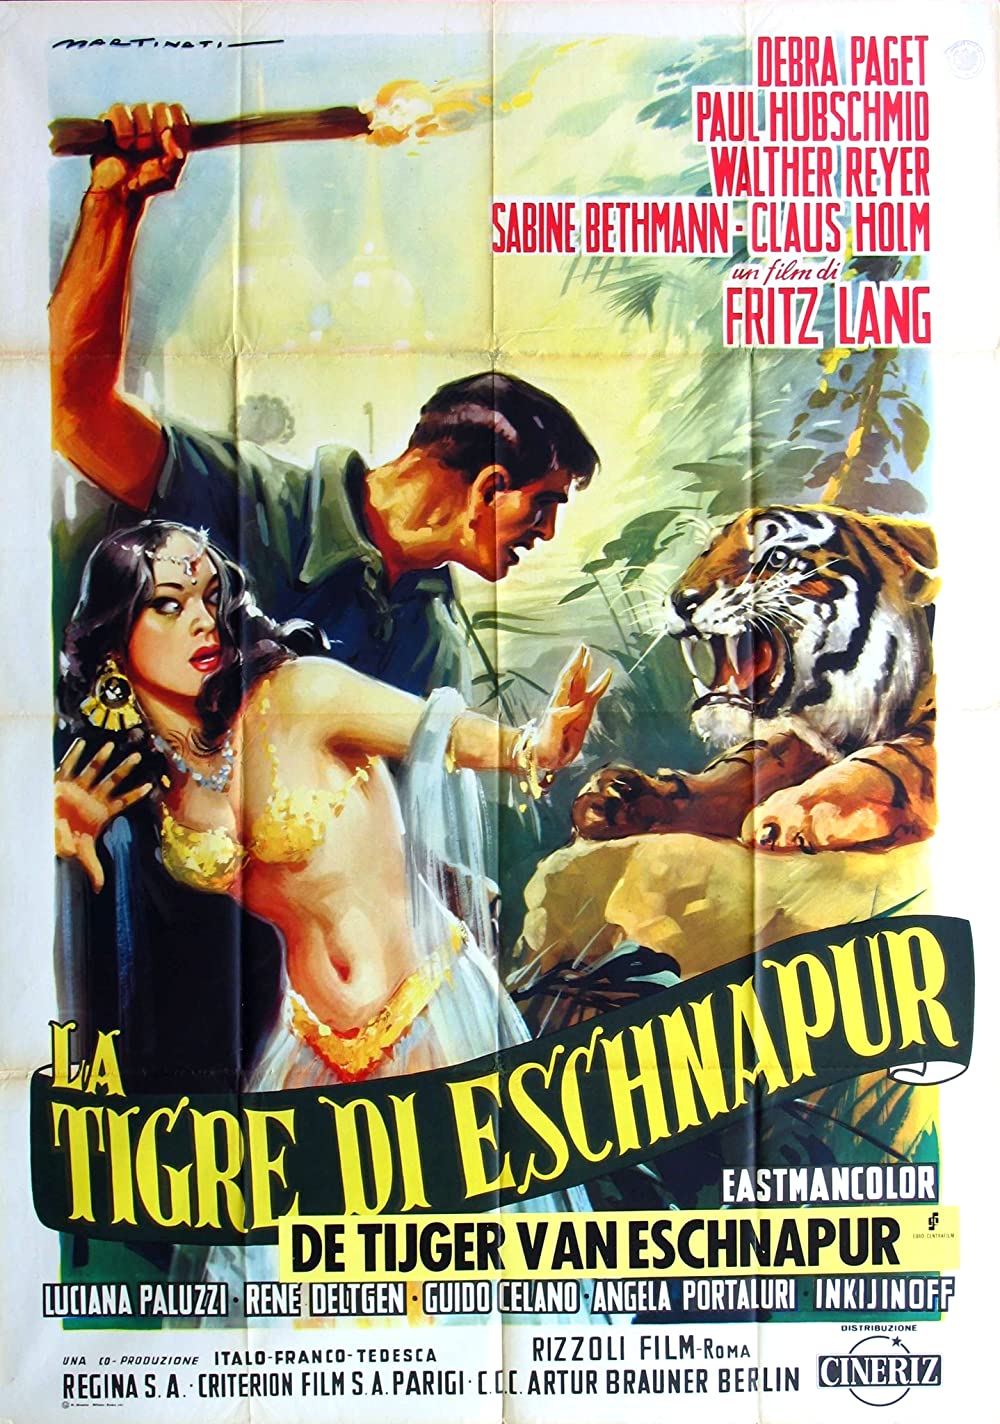 Filmbeschreibung zu Der Tiger von Eschnapur